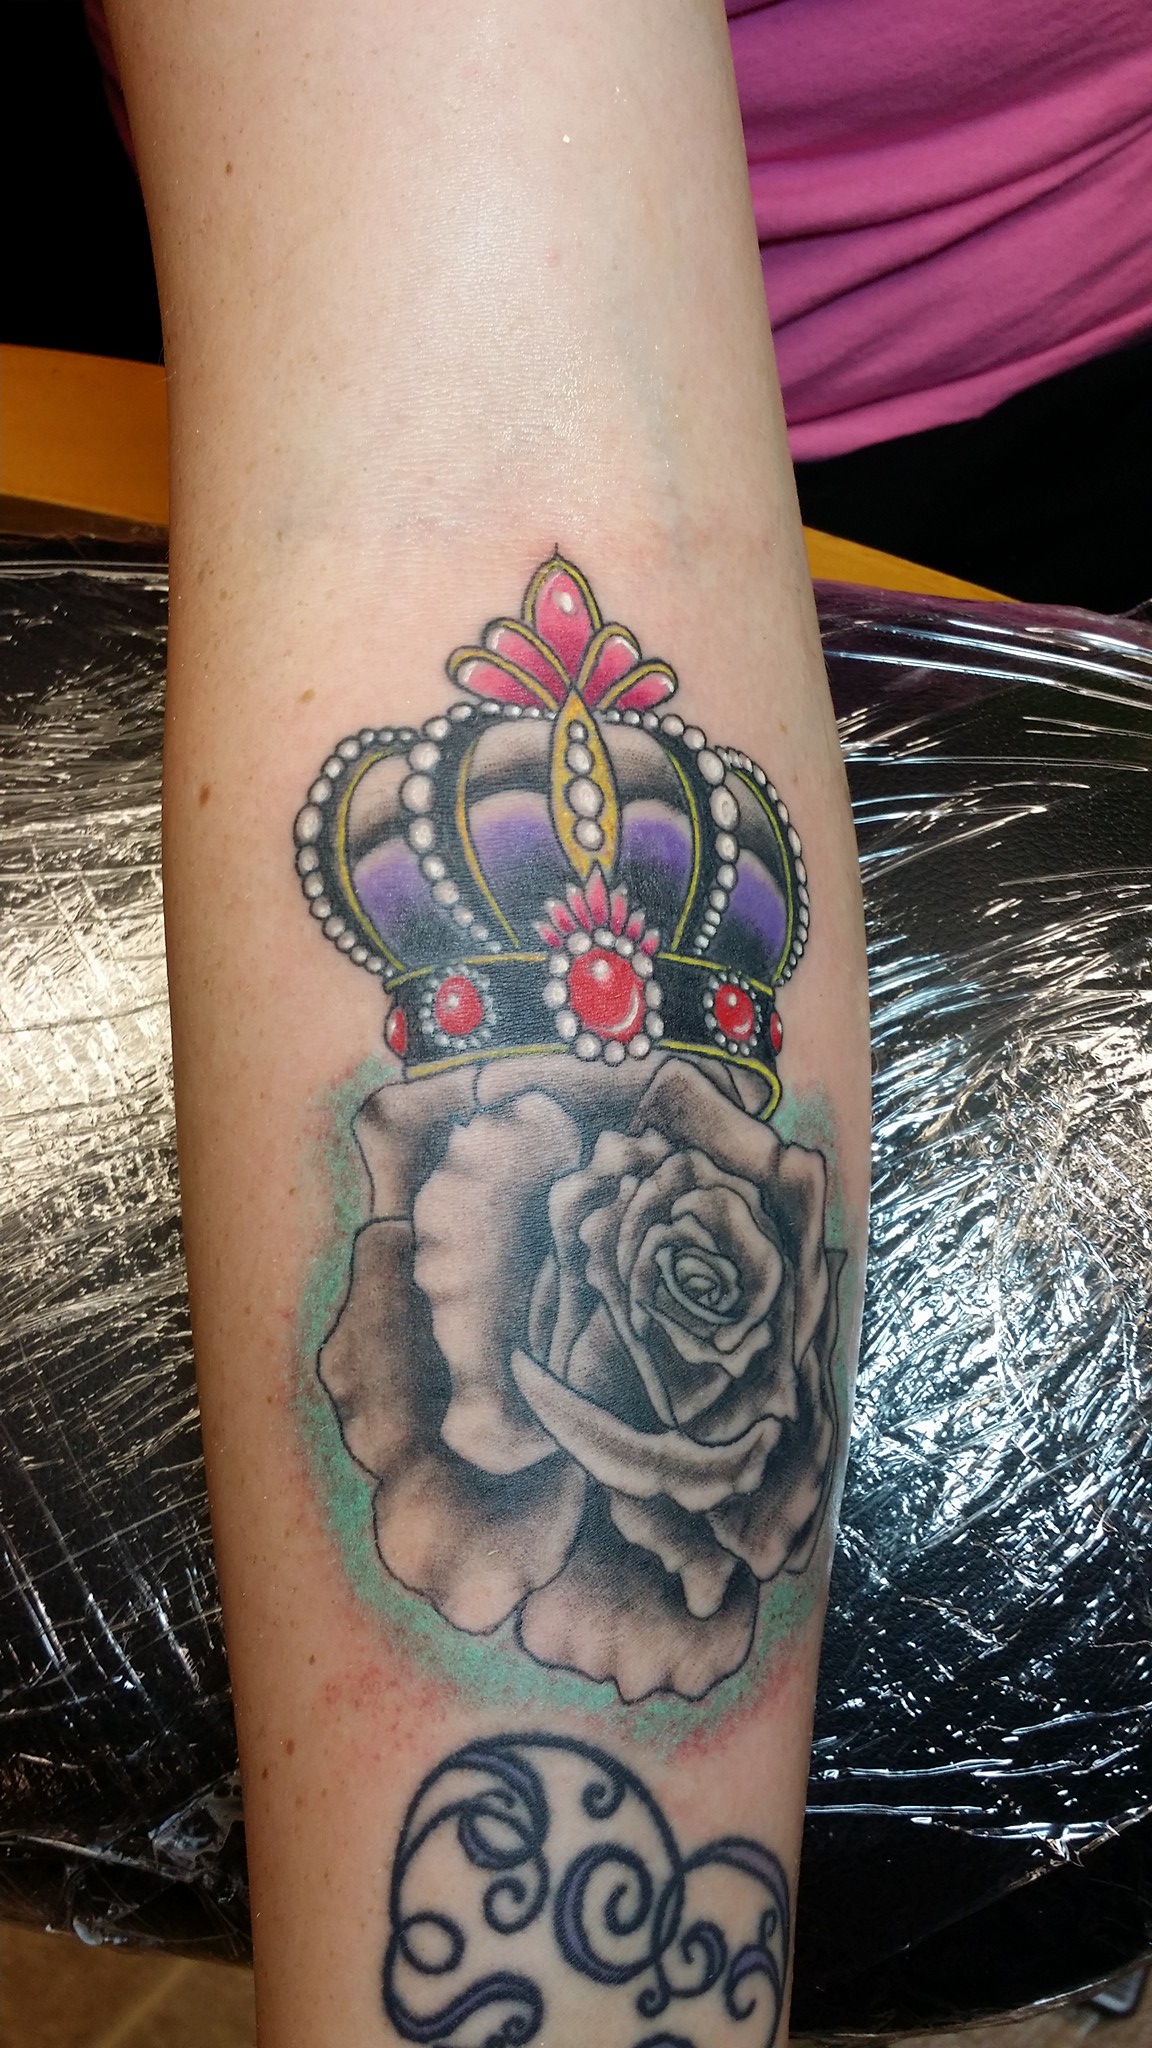 Jennifer Edge MainLineTattoocom Tattoo Art In Chattanooga TN  Tattoos  Tattoos for women Art tattoo